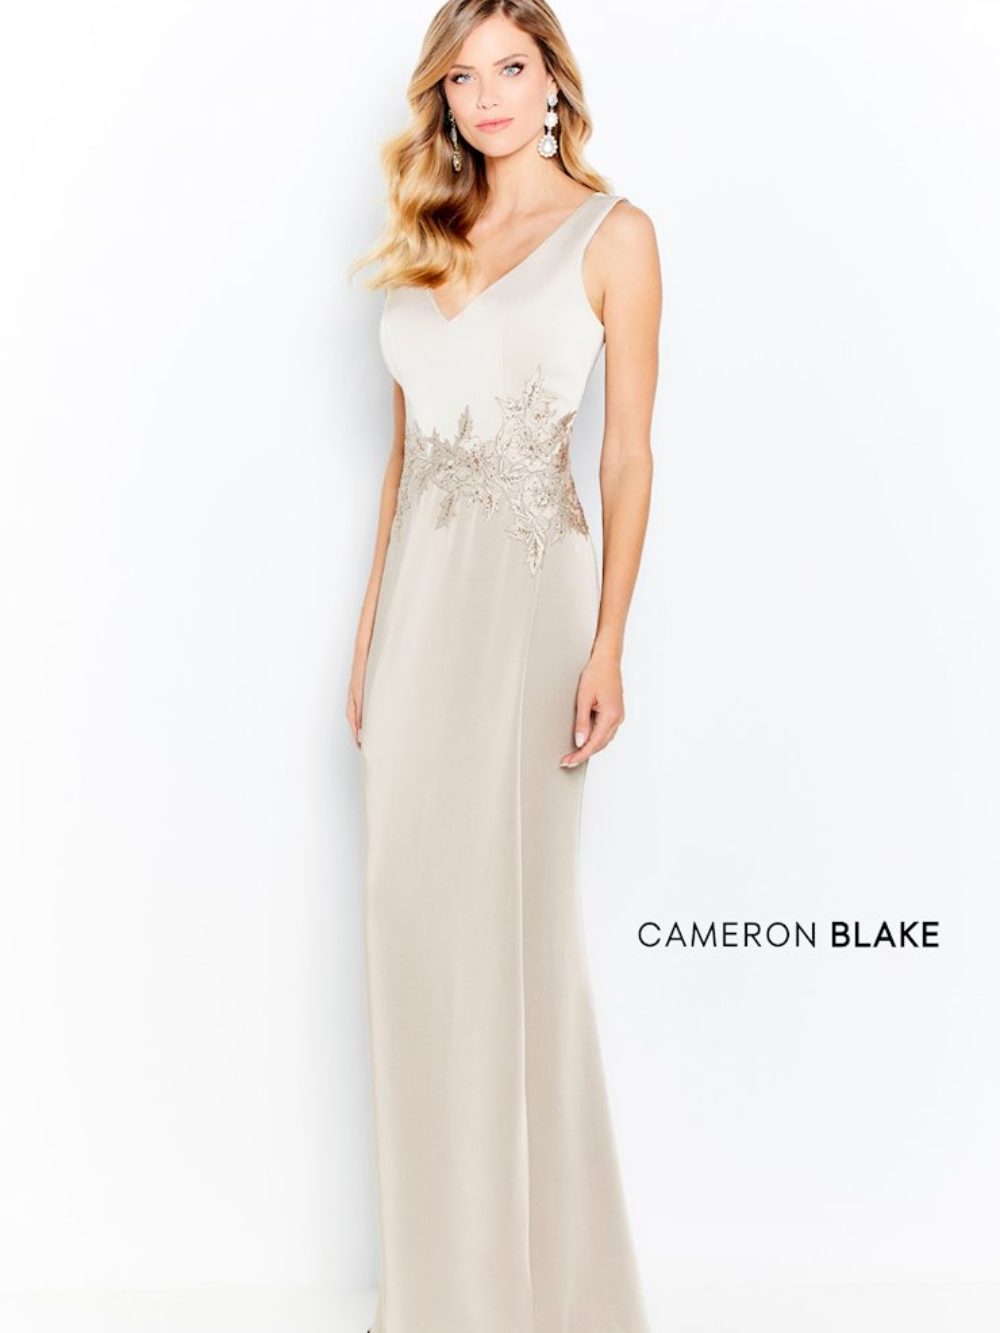 where to buy cameron blake dresses